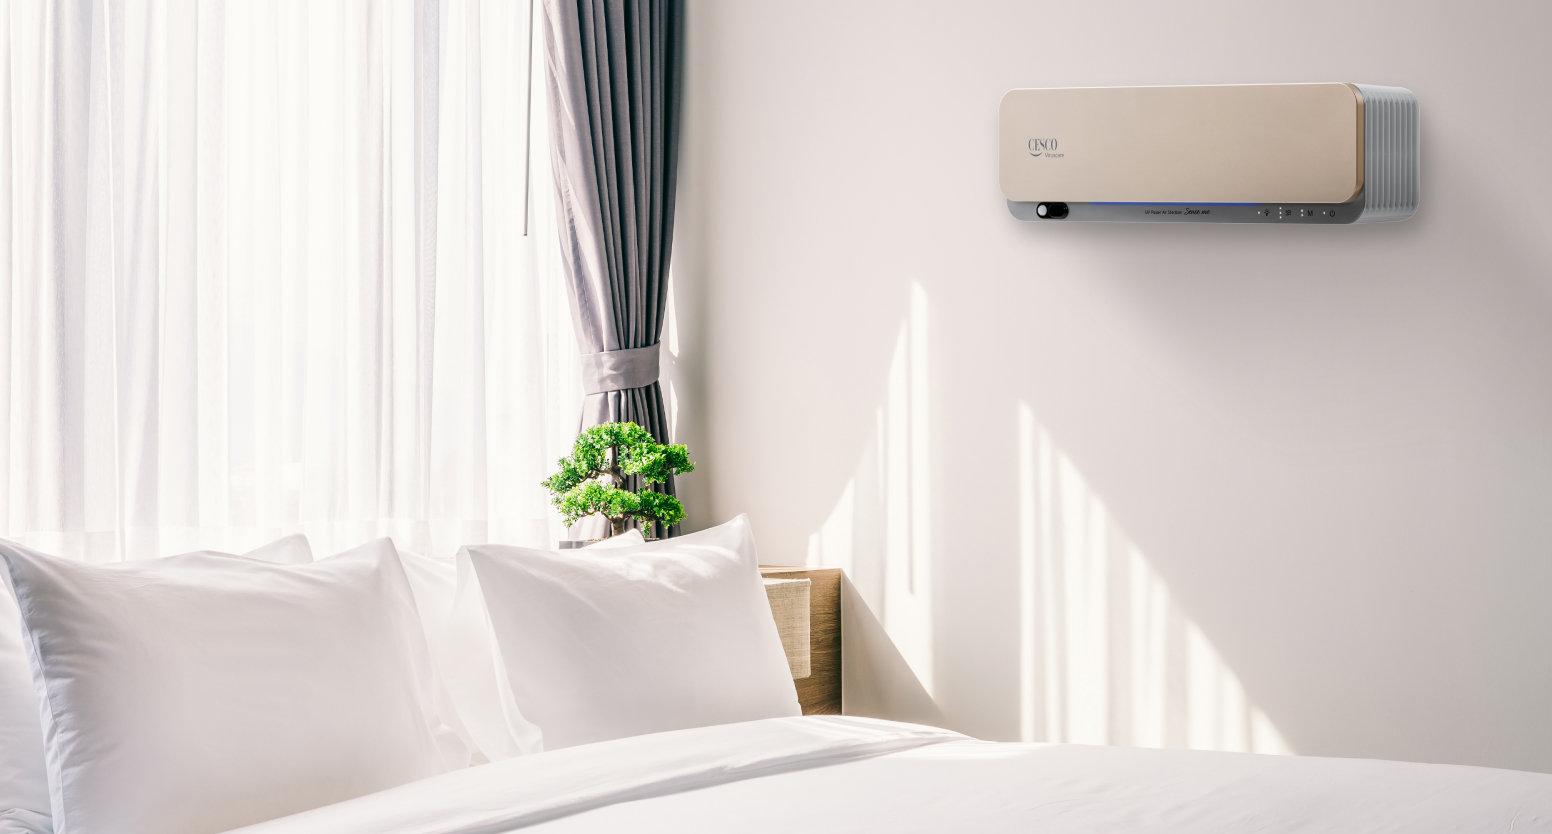 특급호텔 및 리조트 등의 객실 공간 내, 바이러스, 공기살균 등 관리가 가능한 세스코(CESCO)의 UV 파워 공기살균기가 침대 옆 벽면 위쪽에 설치되어 있습니다.